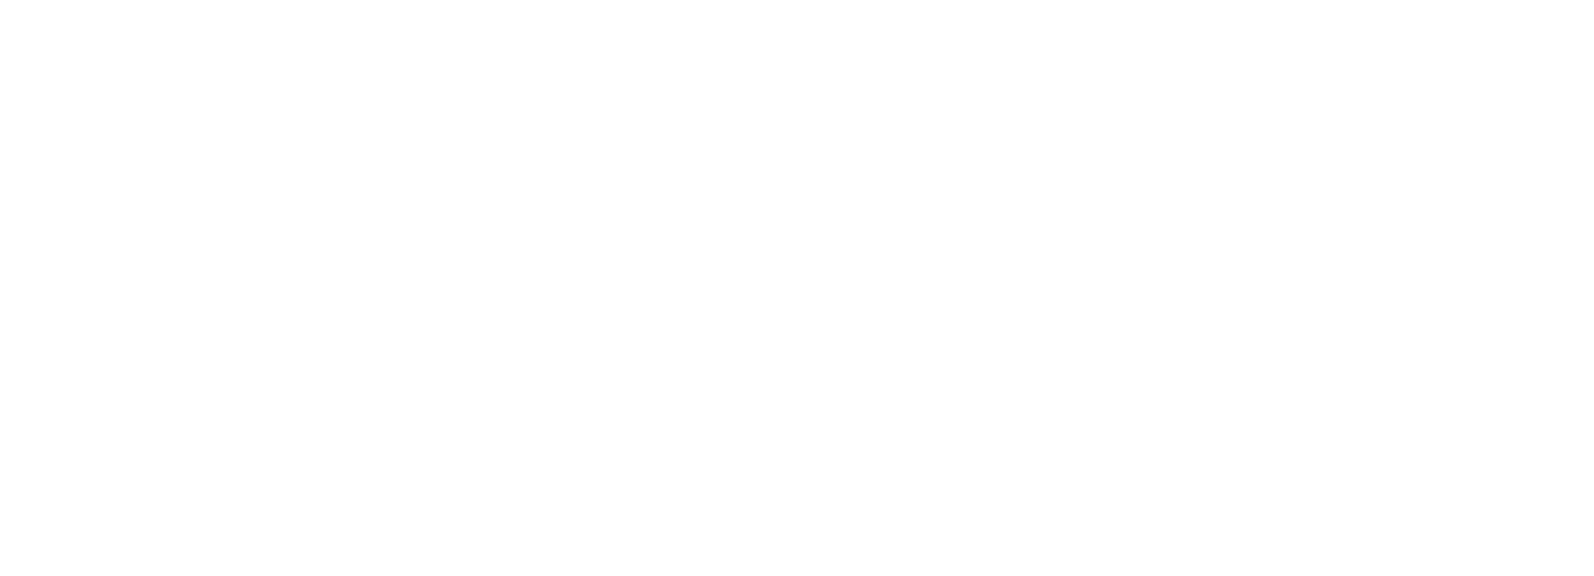 VTEX logo grand pour les fonds sombres (PNG transparent)